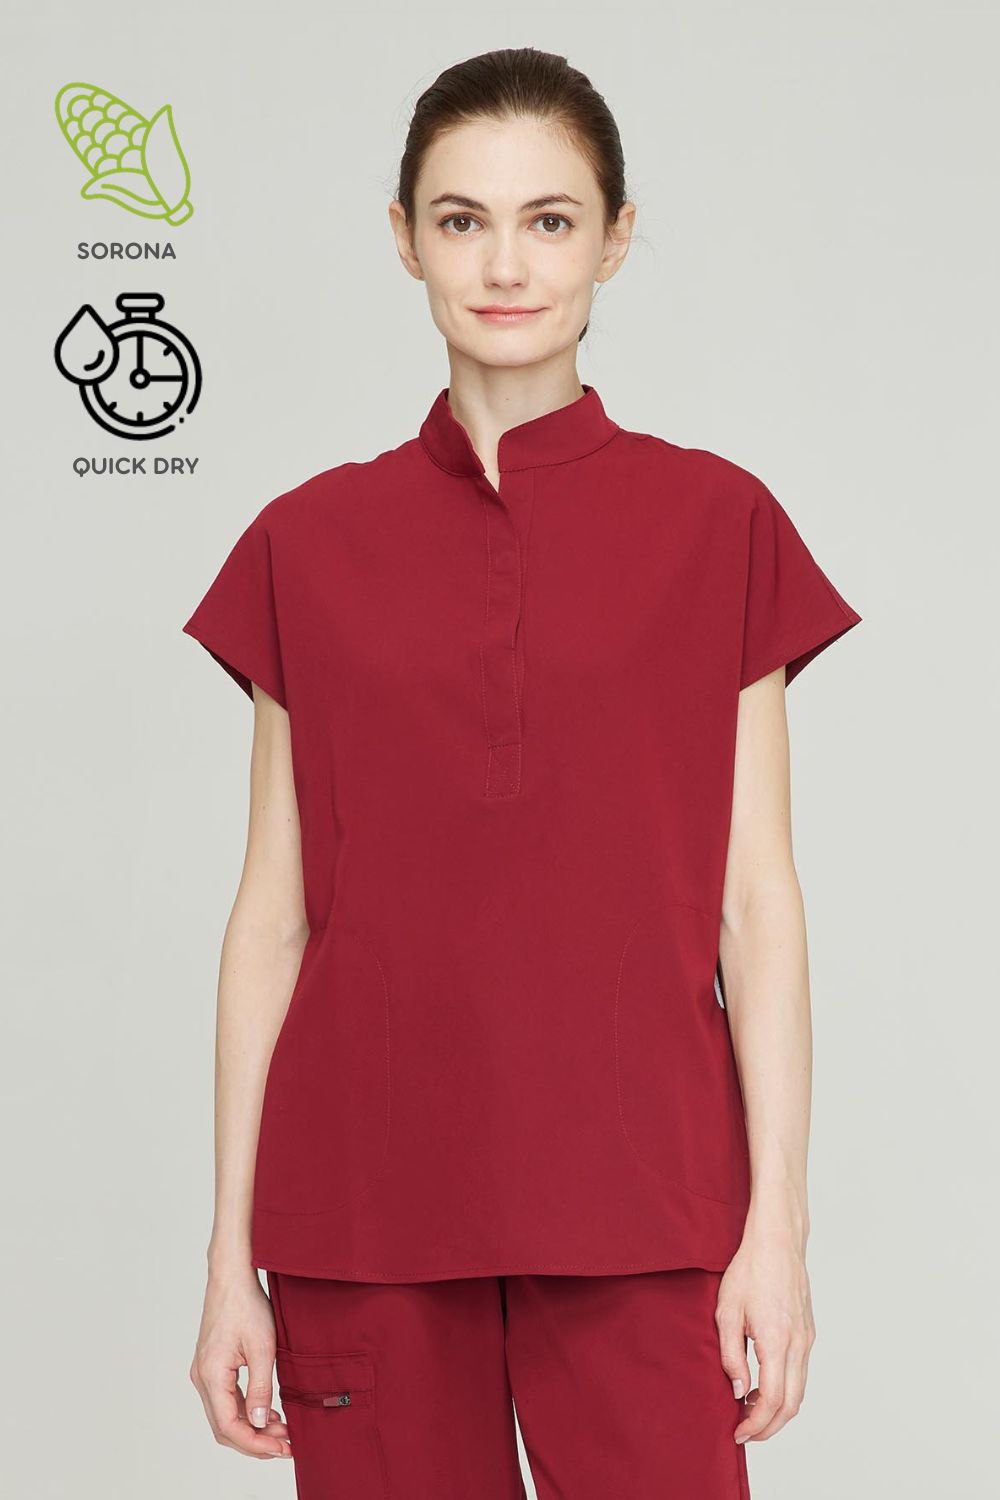 Women's BioNTex™ Eco Short Sleeve Top